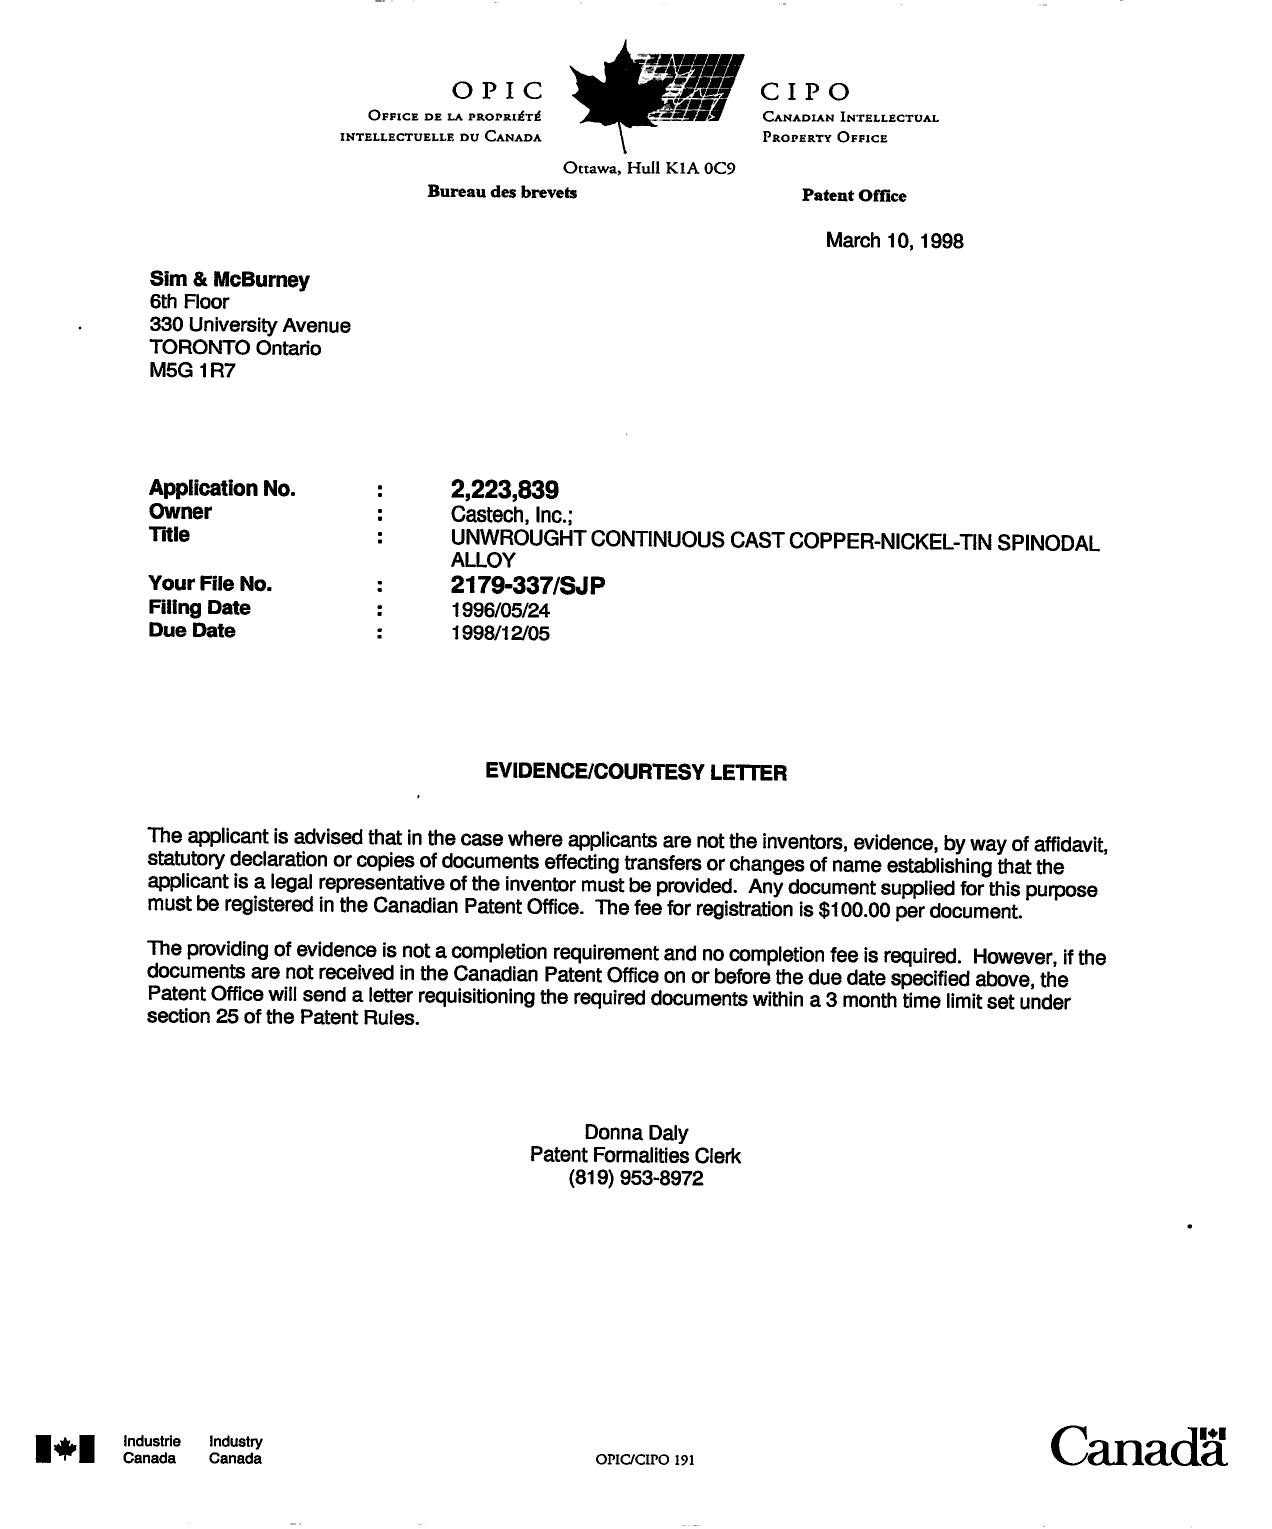 Document de brevet canadien 2223839. Correspondance 19980310. Image 1 de 1